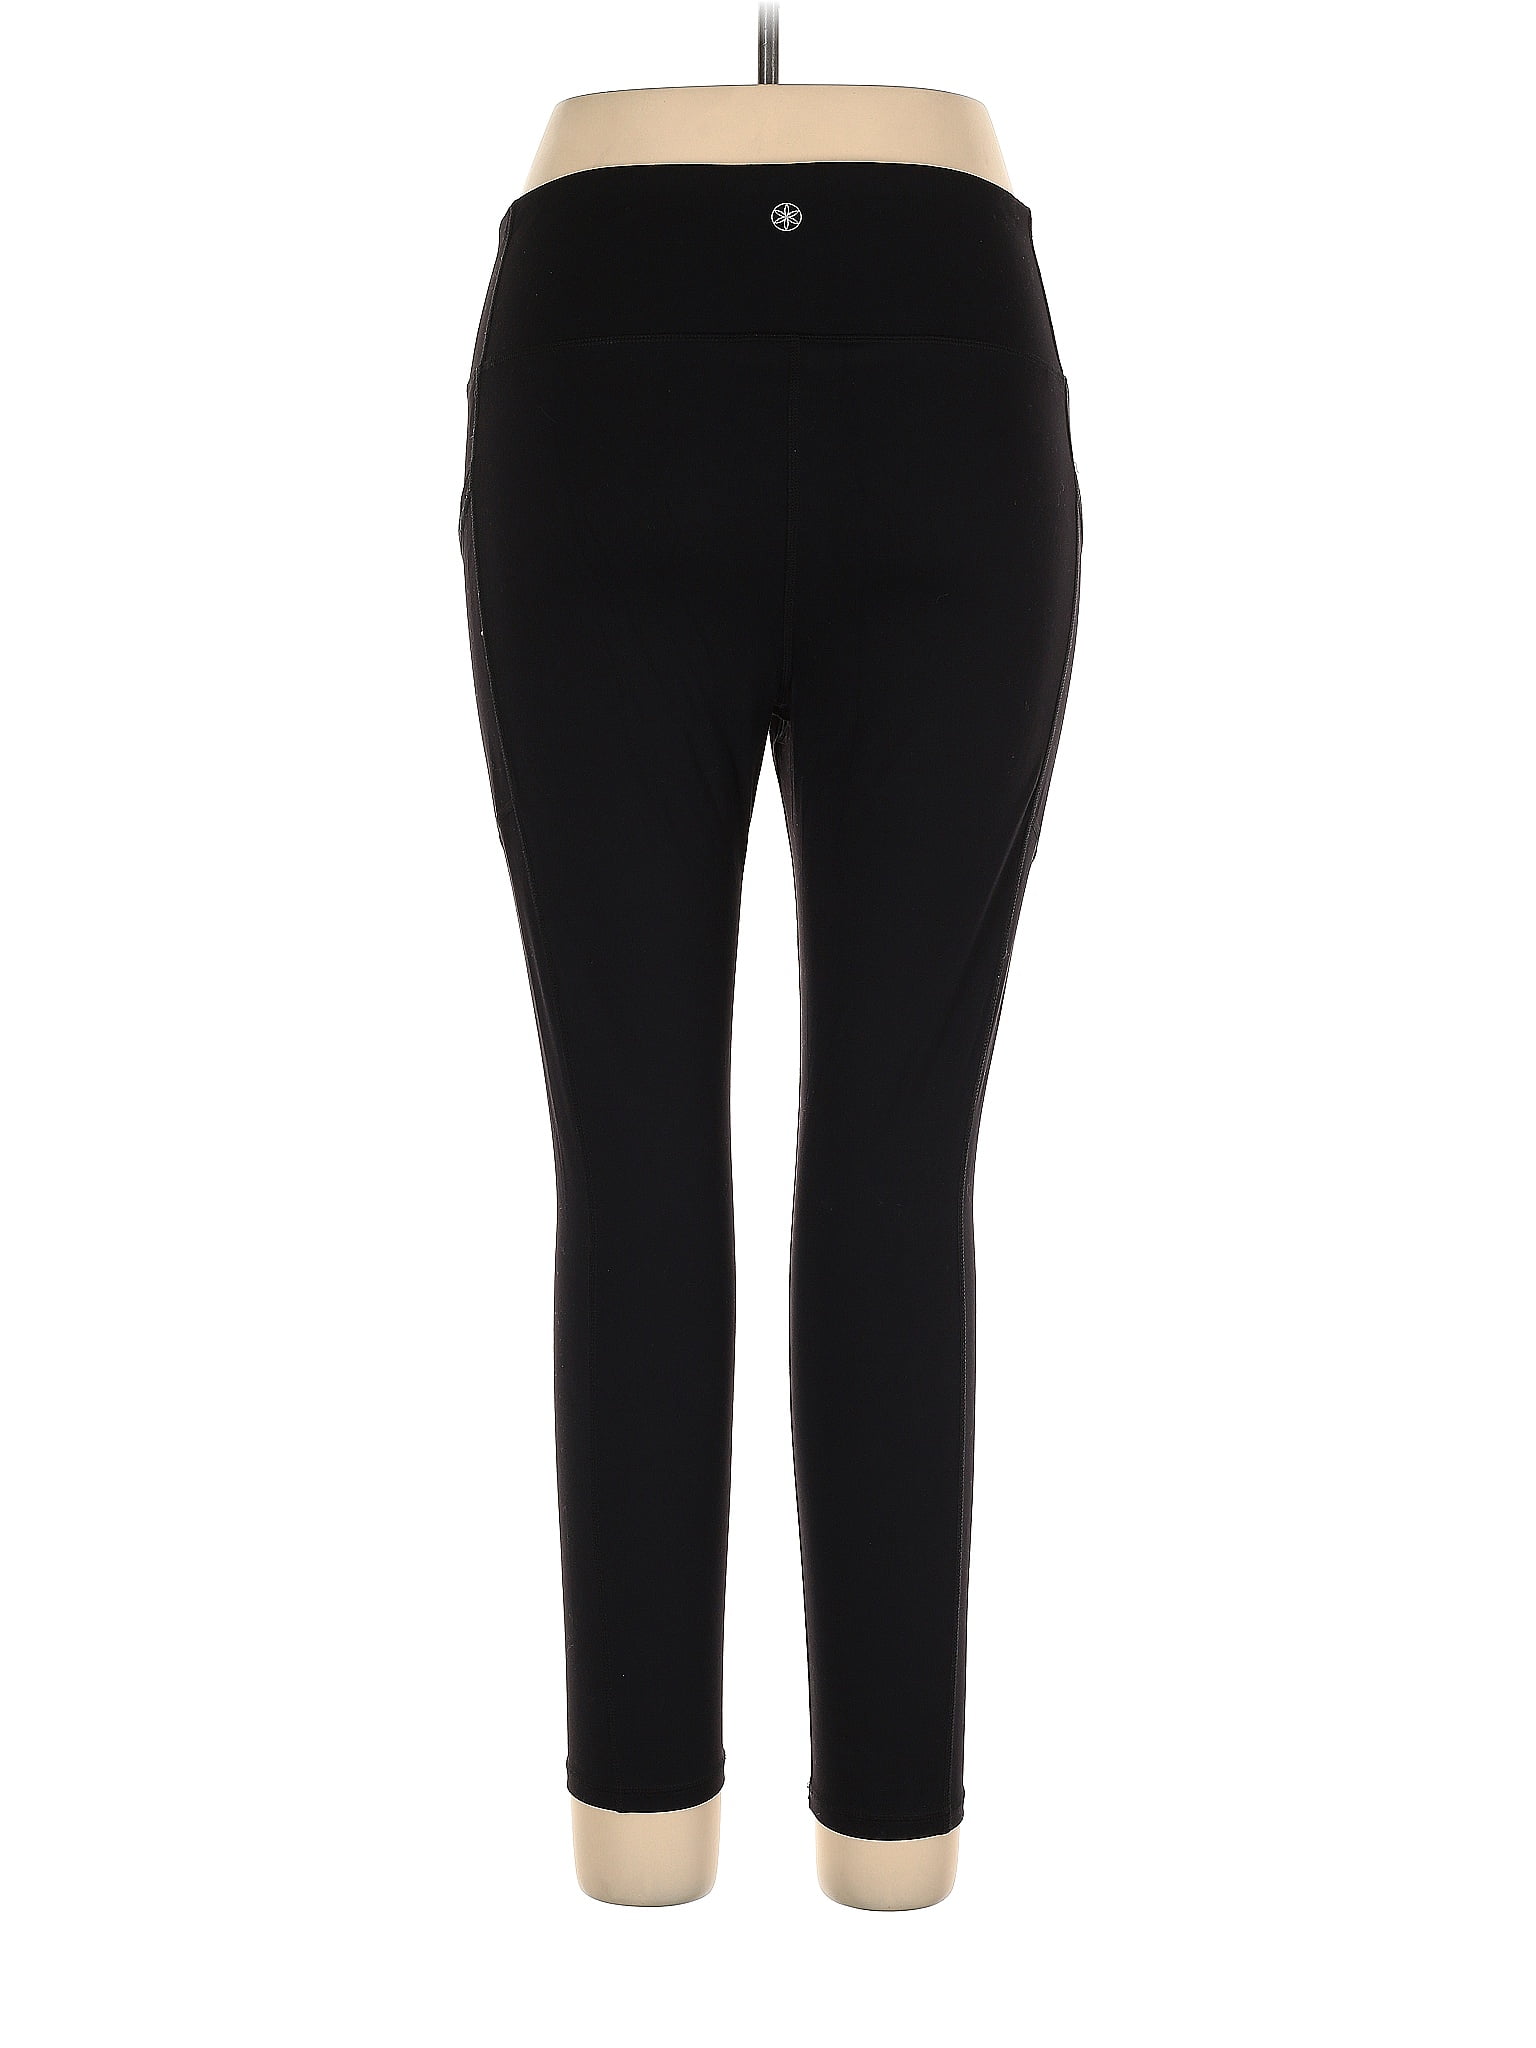 GAIAM Black Active Pants Size XL - 55% off